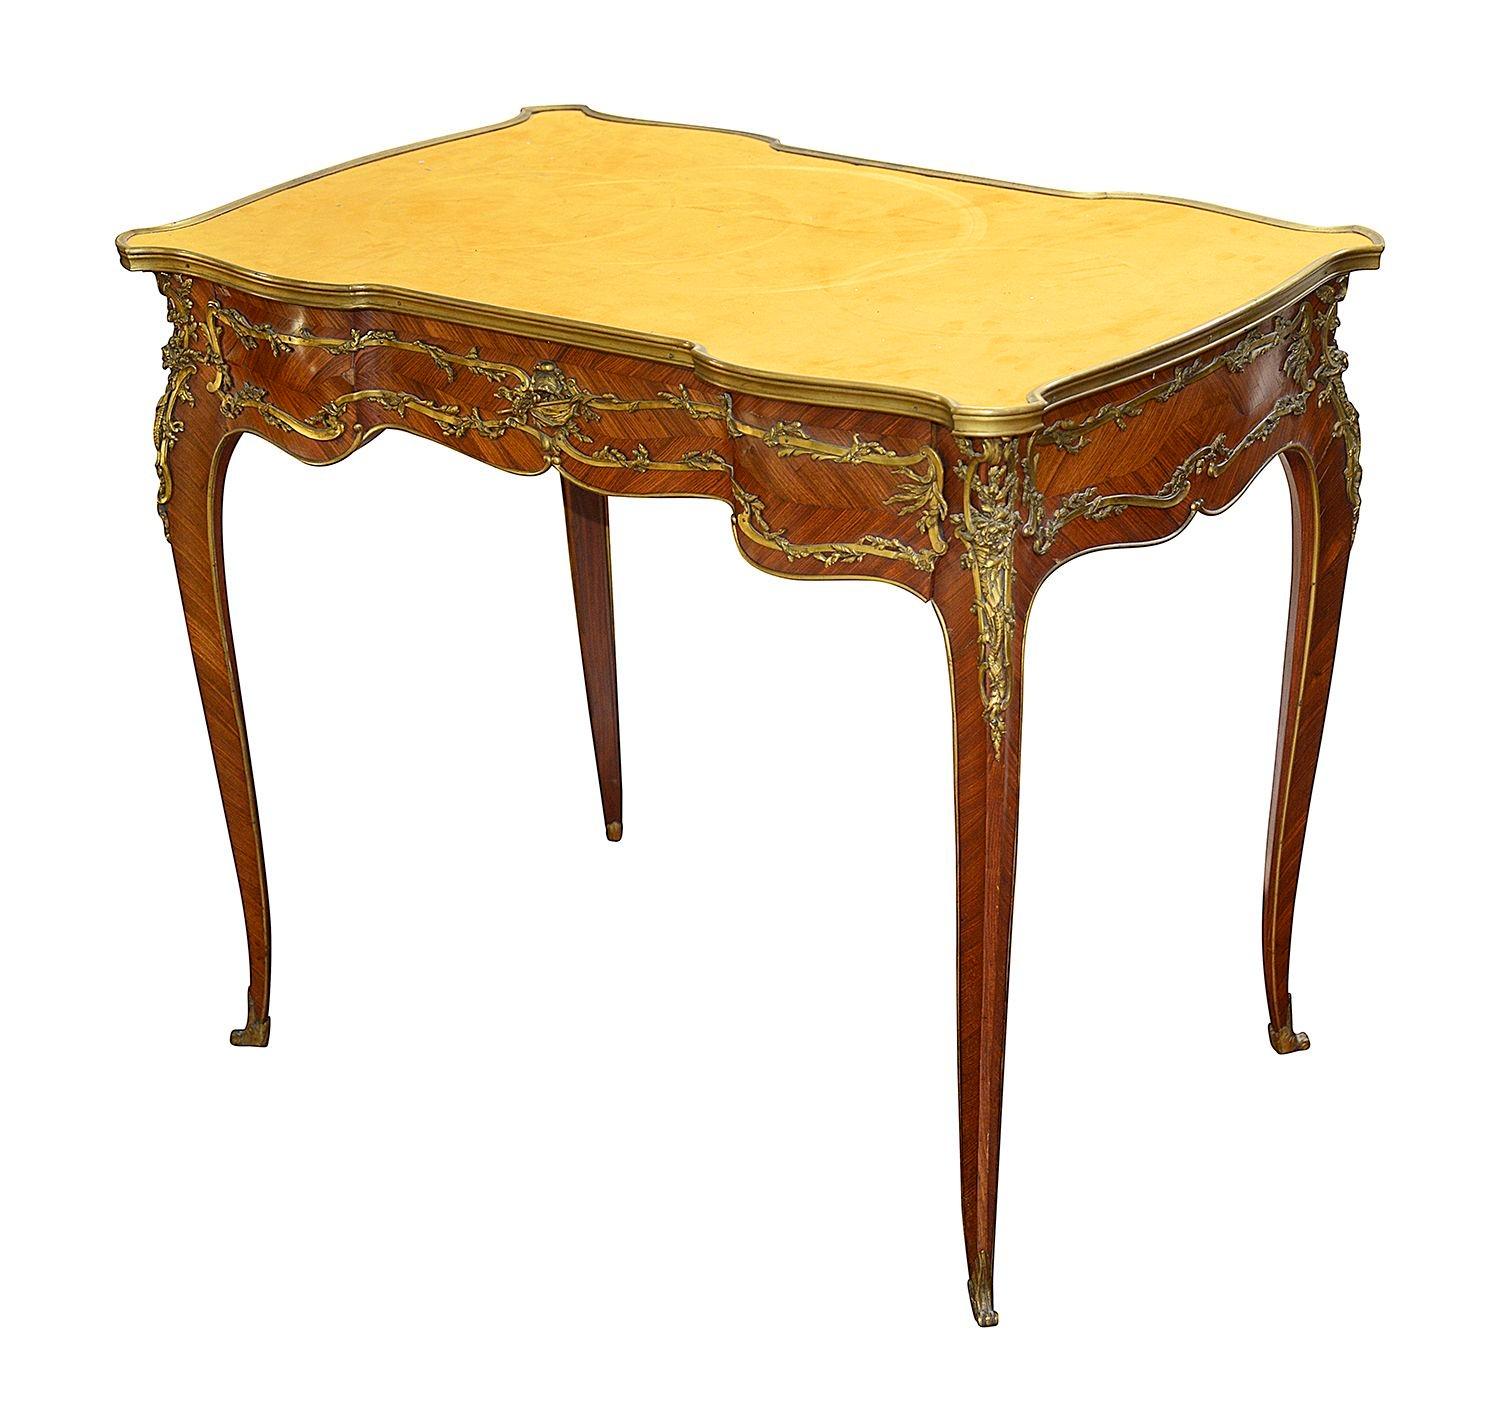 Eine feine Qualität, elegante späten 19. Jahrhundert Französisch Louis XV-Stil Kingwood Serpentin geformt bureau plat, mit einem Einsatz Wildleder bedeckt Schreibfläche, eine einzelne Fries Schublade, wunderbare vergoldete Ormolu Beschläge mit